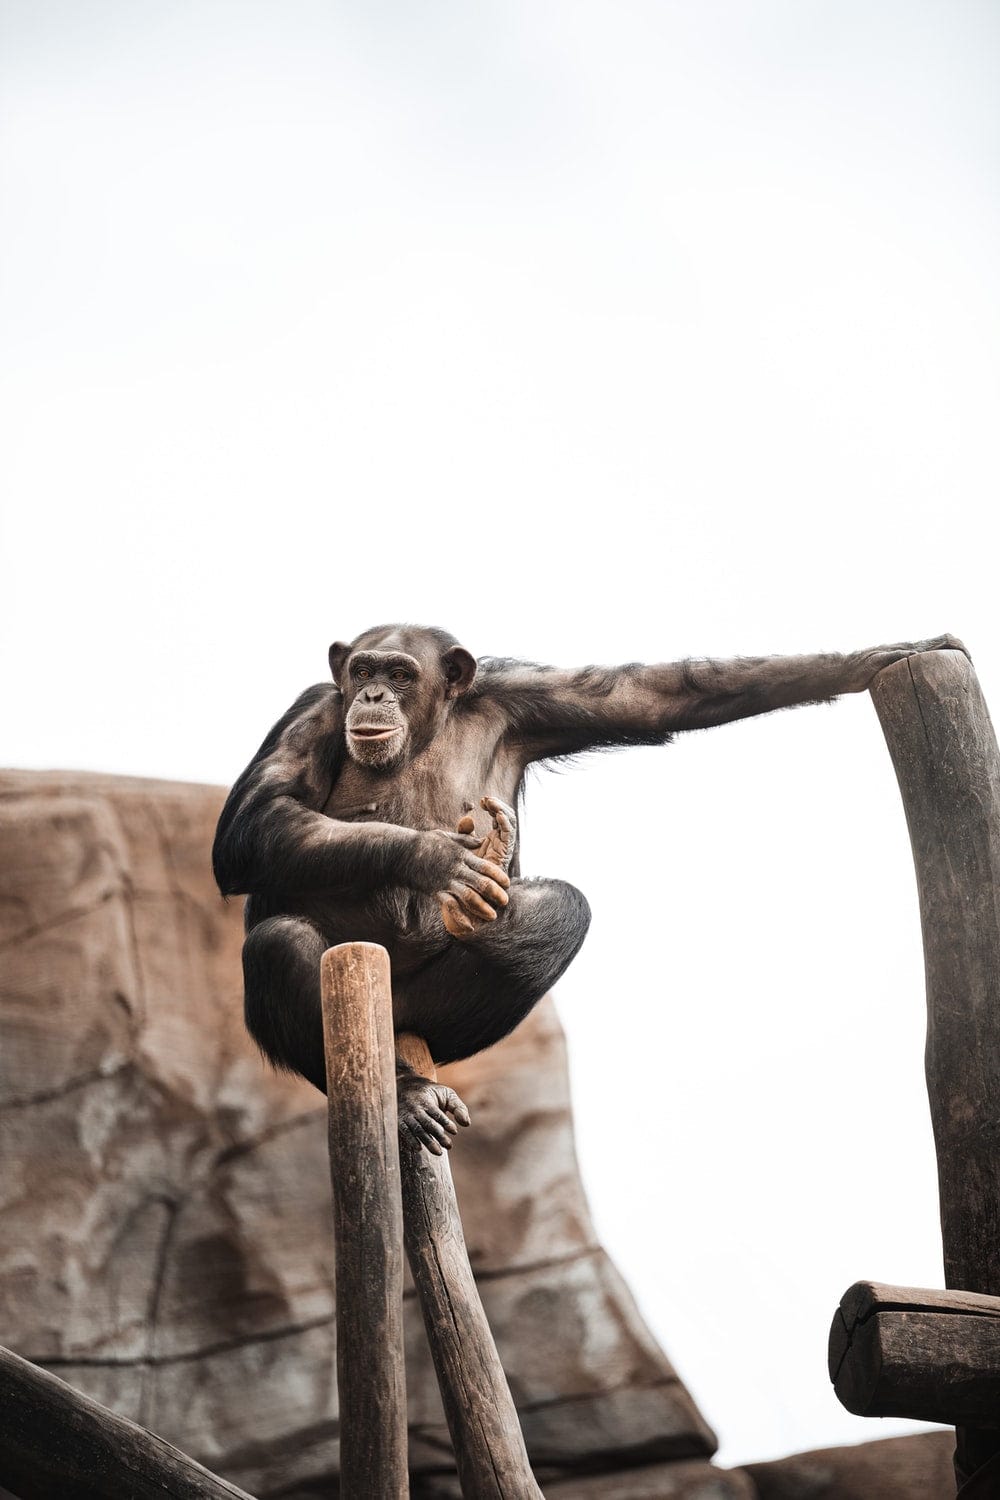 Cross Stitch | Chimpanzee - Black Monkey On Brown Wooden Stick - Cross Stitched